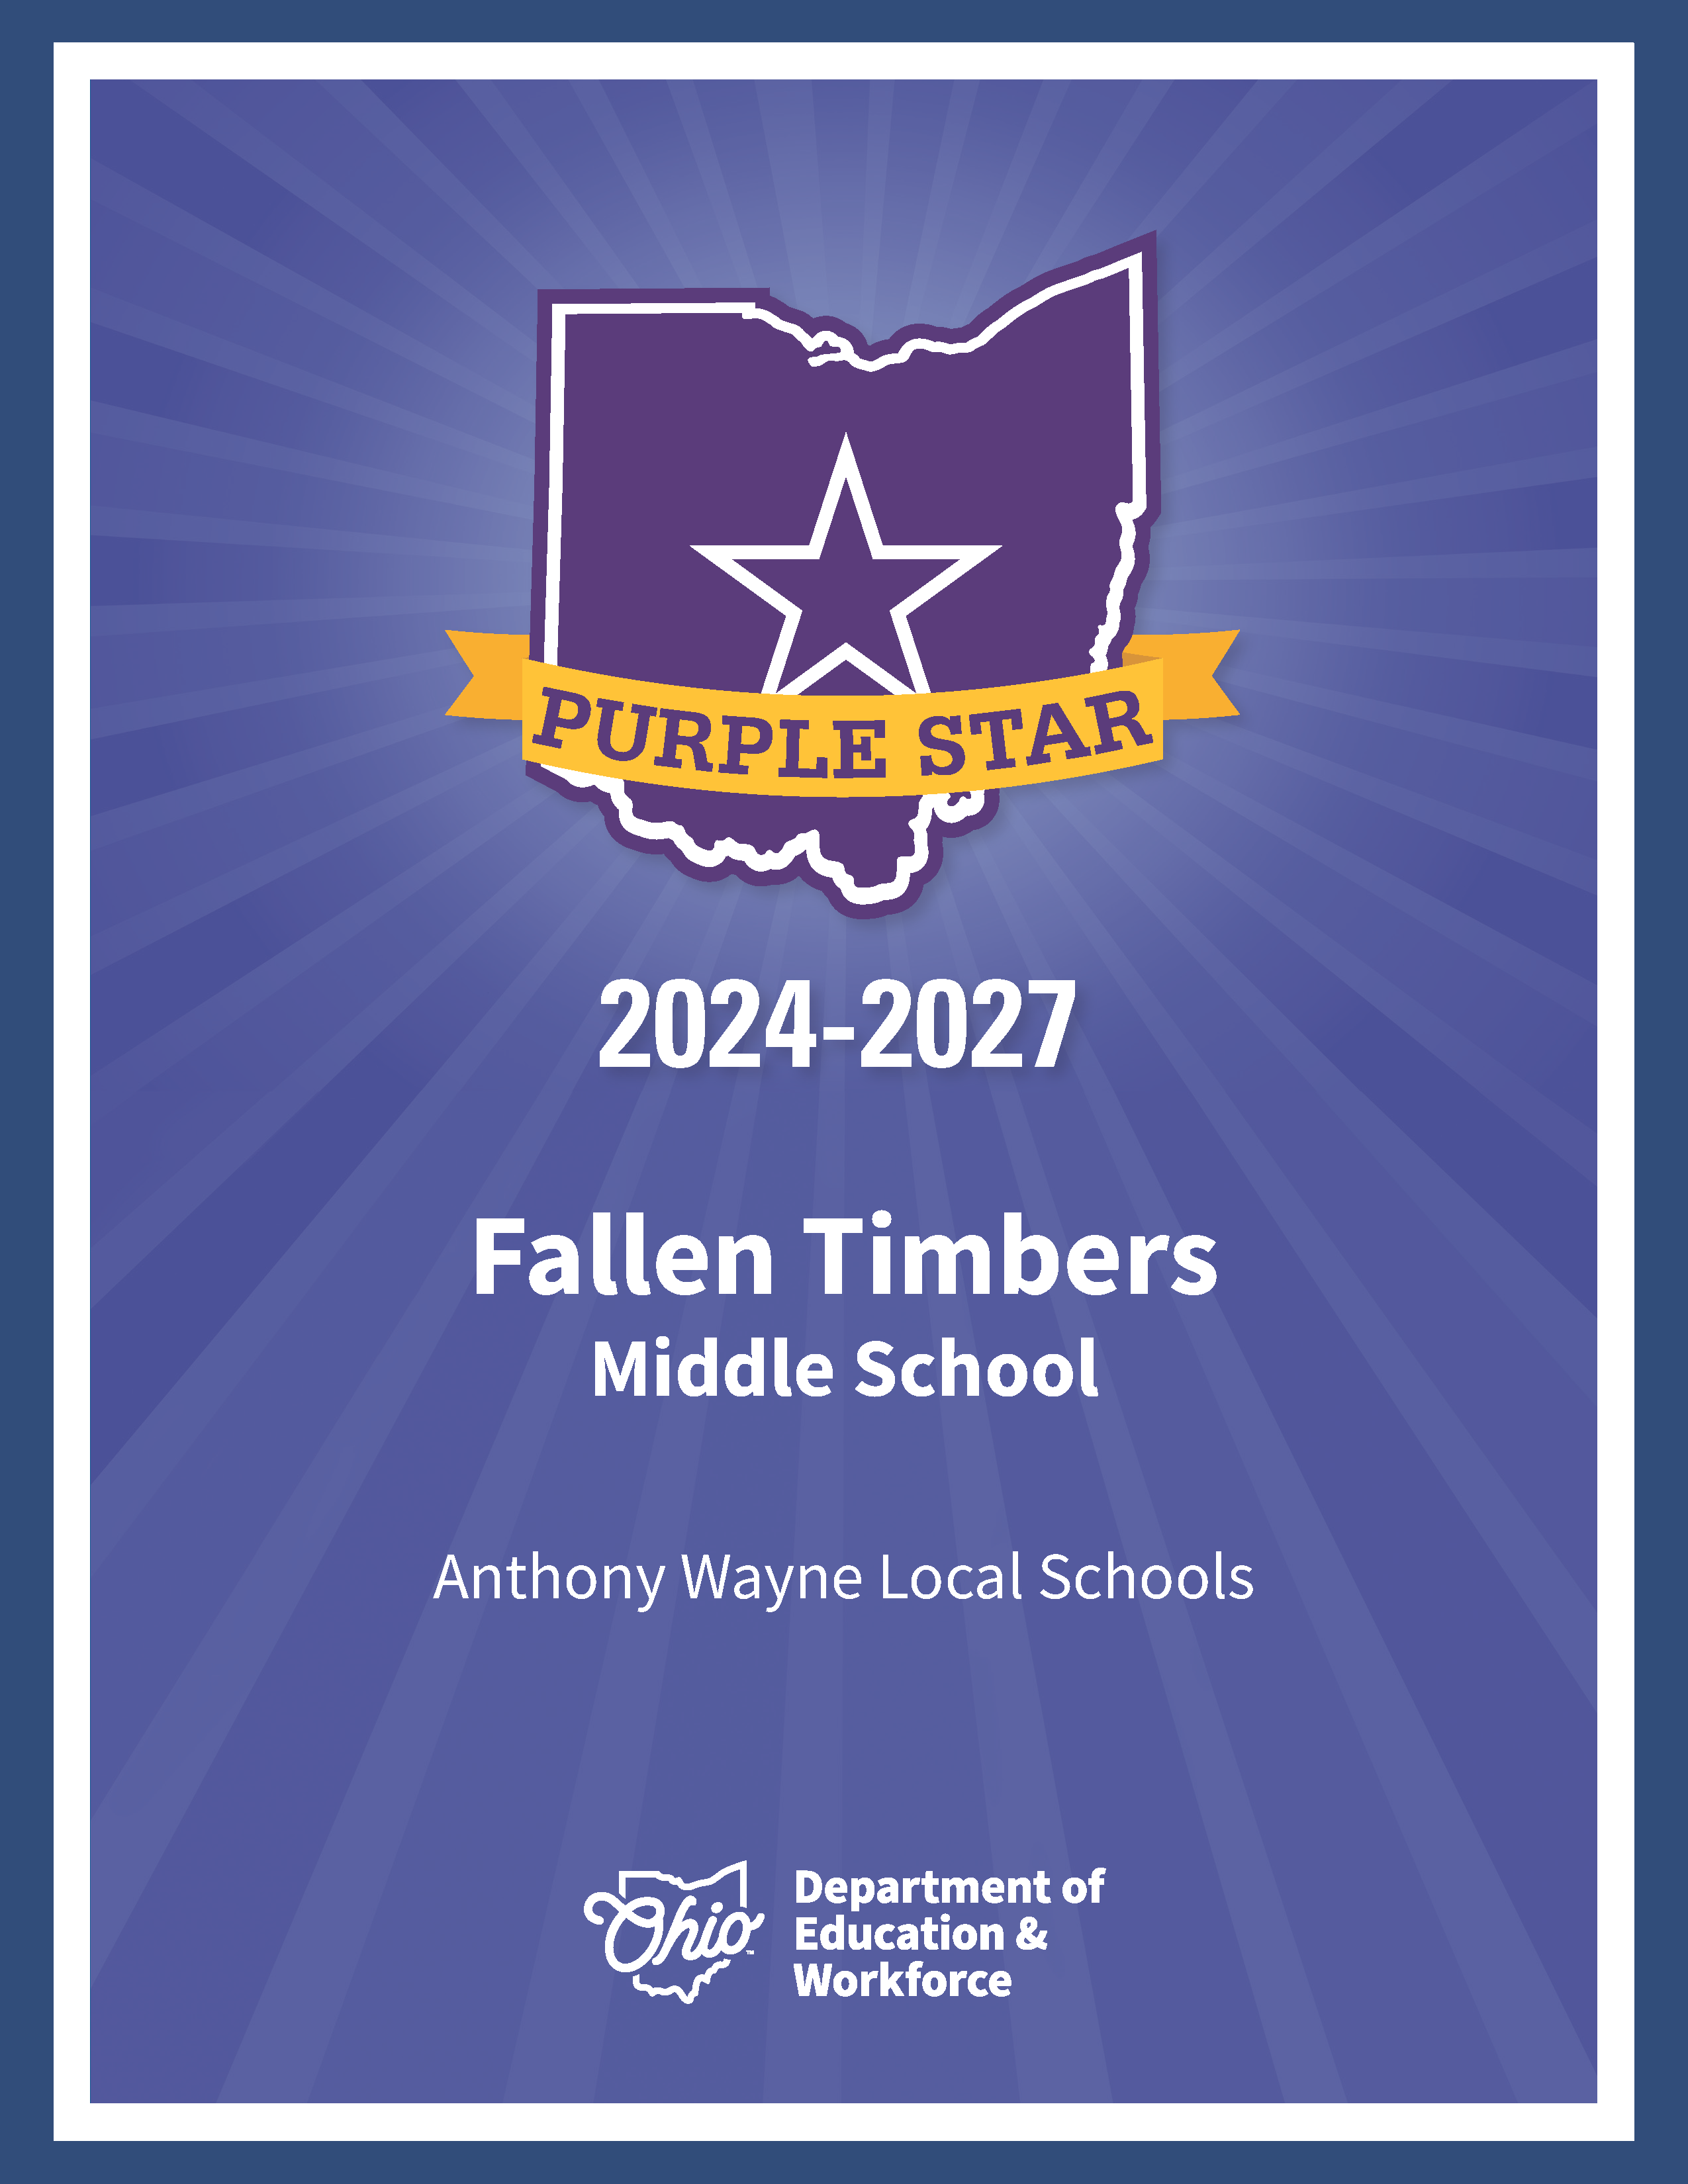 fallen timbers purple star